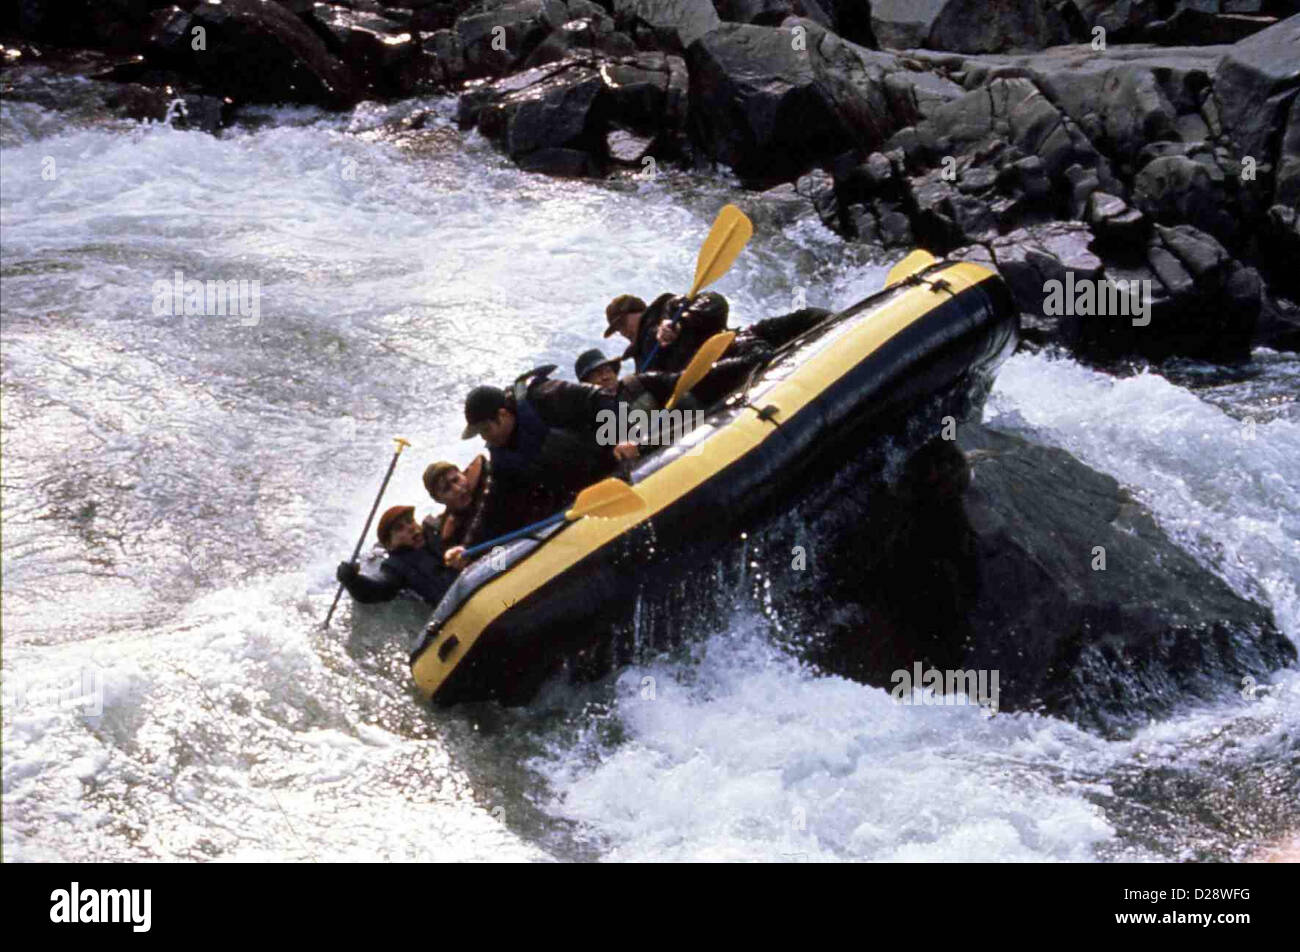 Reissende Stroemung-Rafting-Trip Ins Verderben  White Mile  Doch es kommt zu einem tragischen Unglück: Das Boot kentert - die Stock Photo